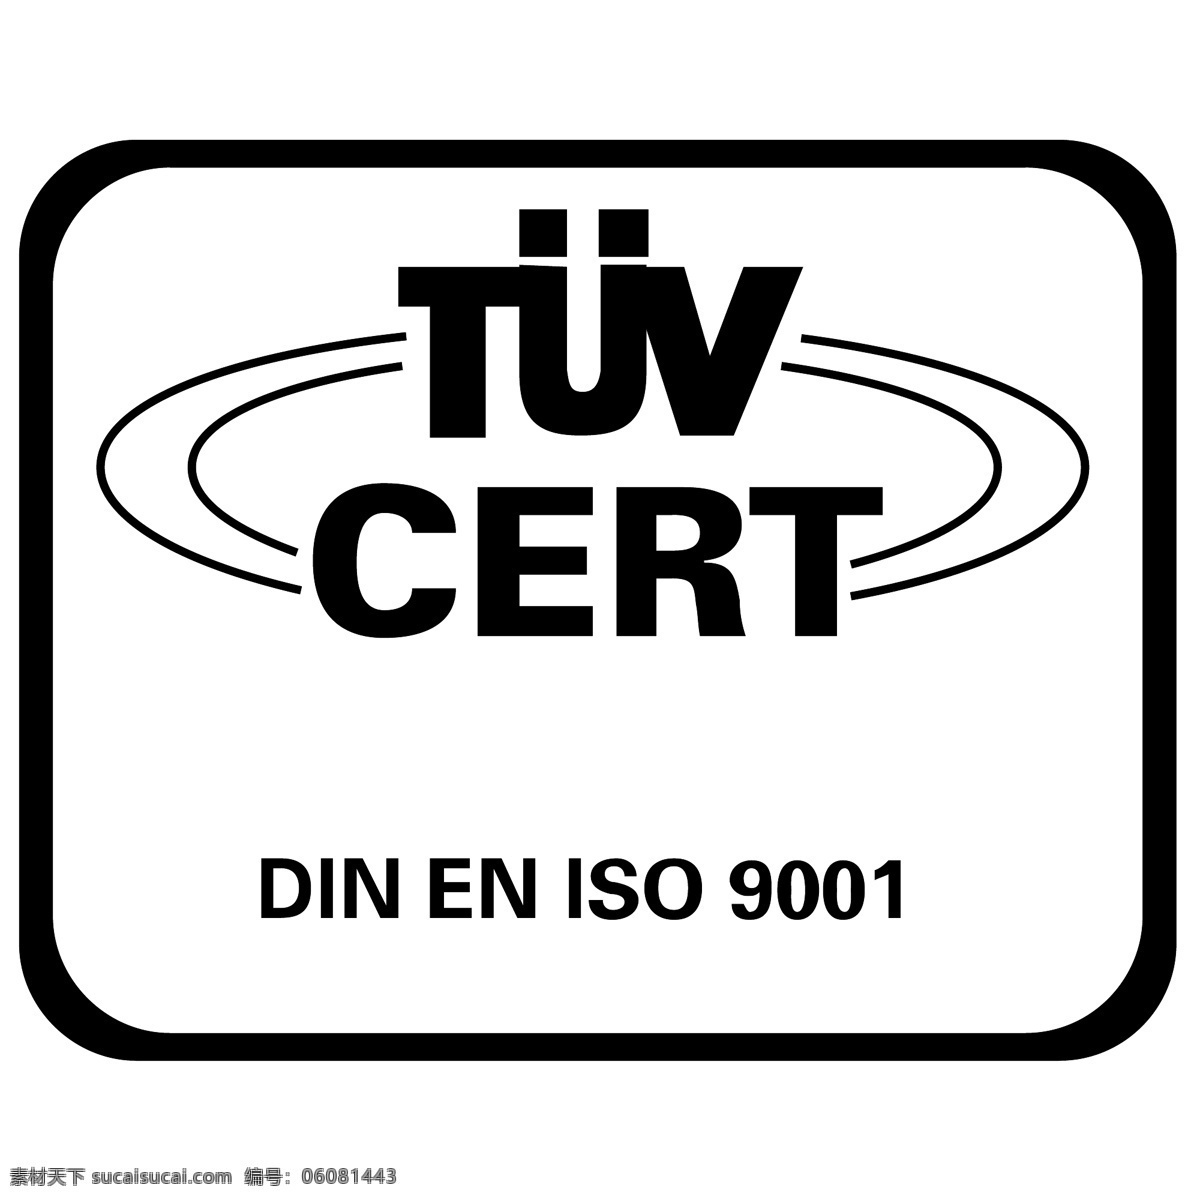 tuv 证书 标识 公司 免费 品牌 品牌标识 商标 矢量标志下载 免费矢量标识 矢量 psd源文件 logo设计